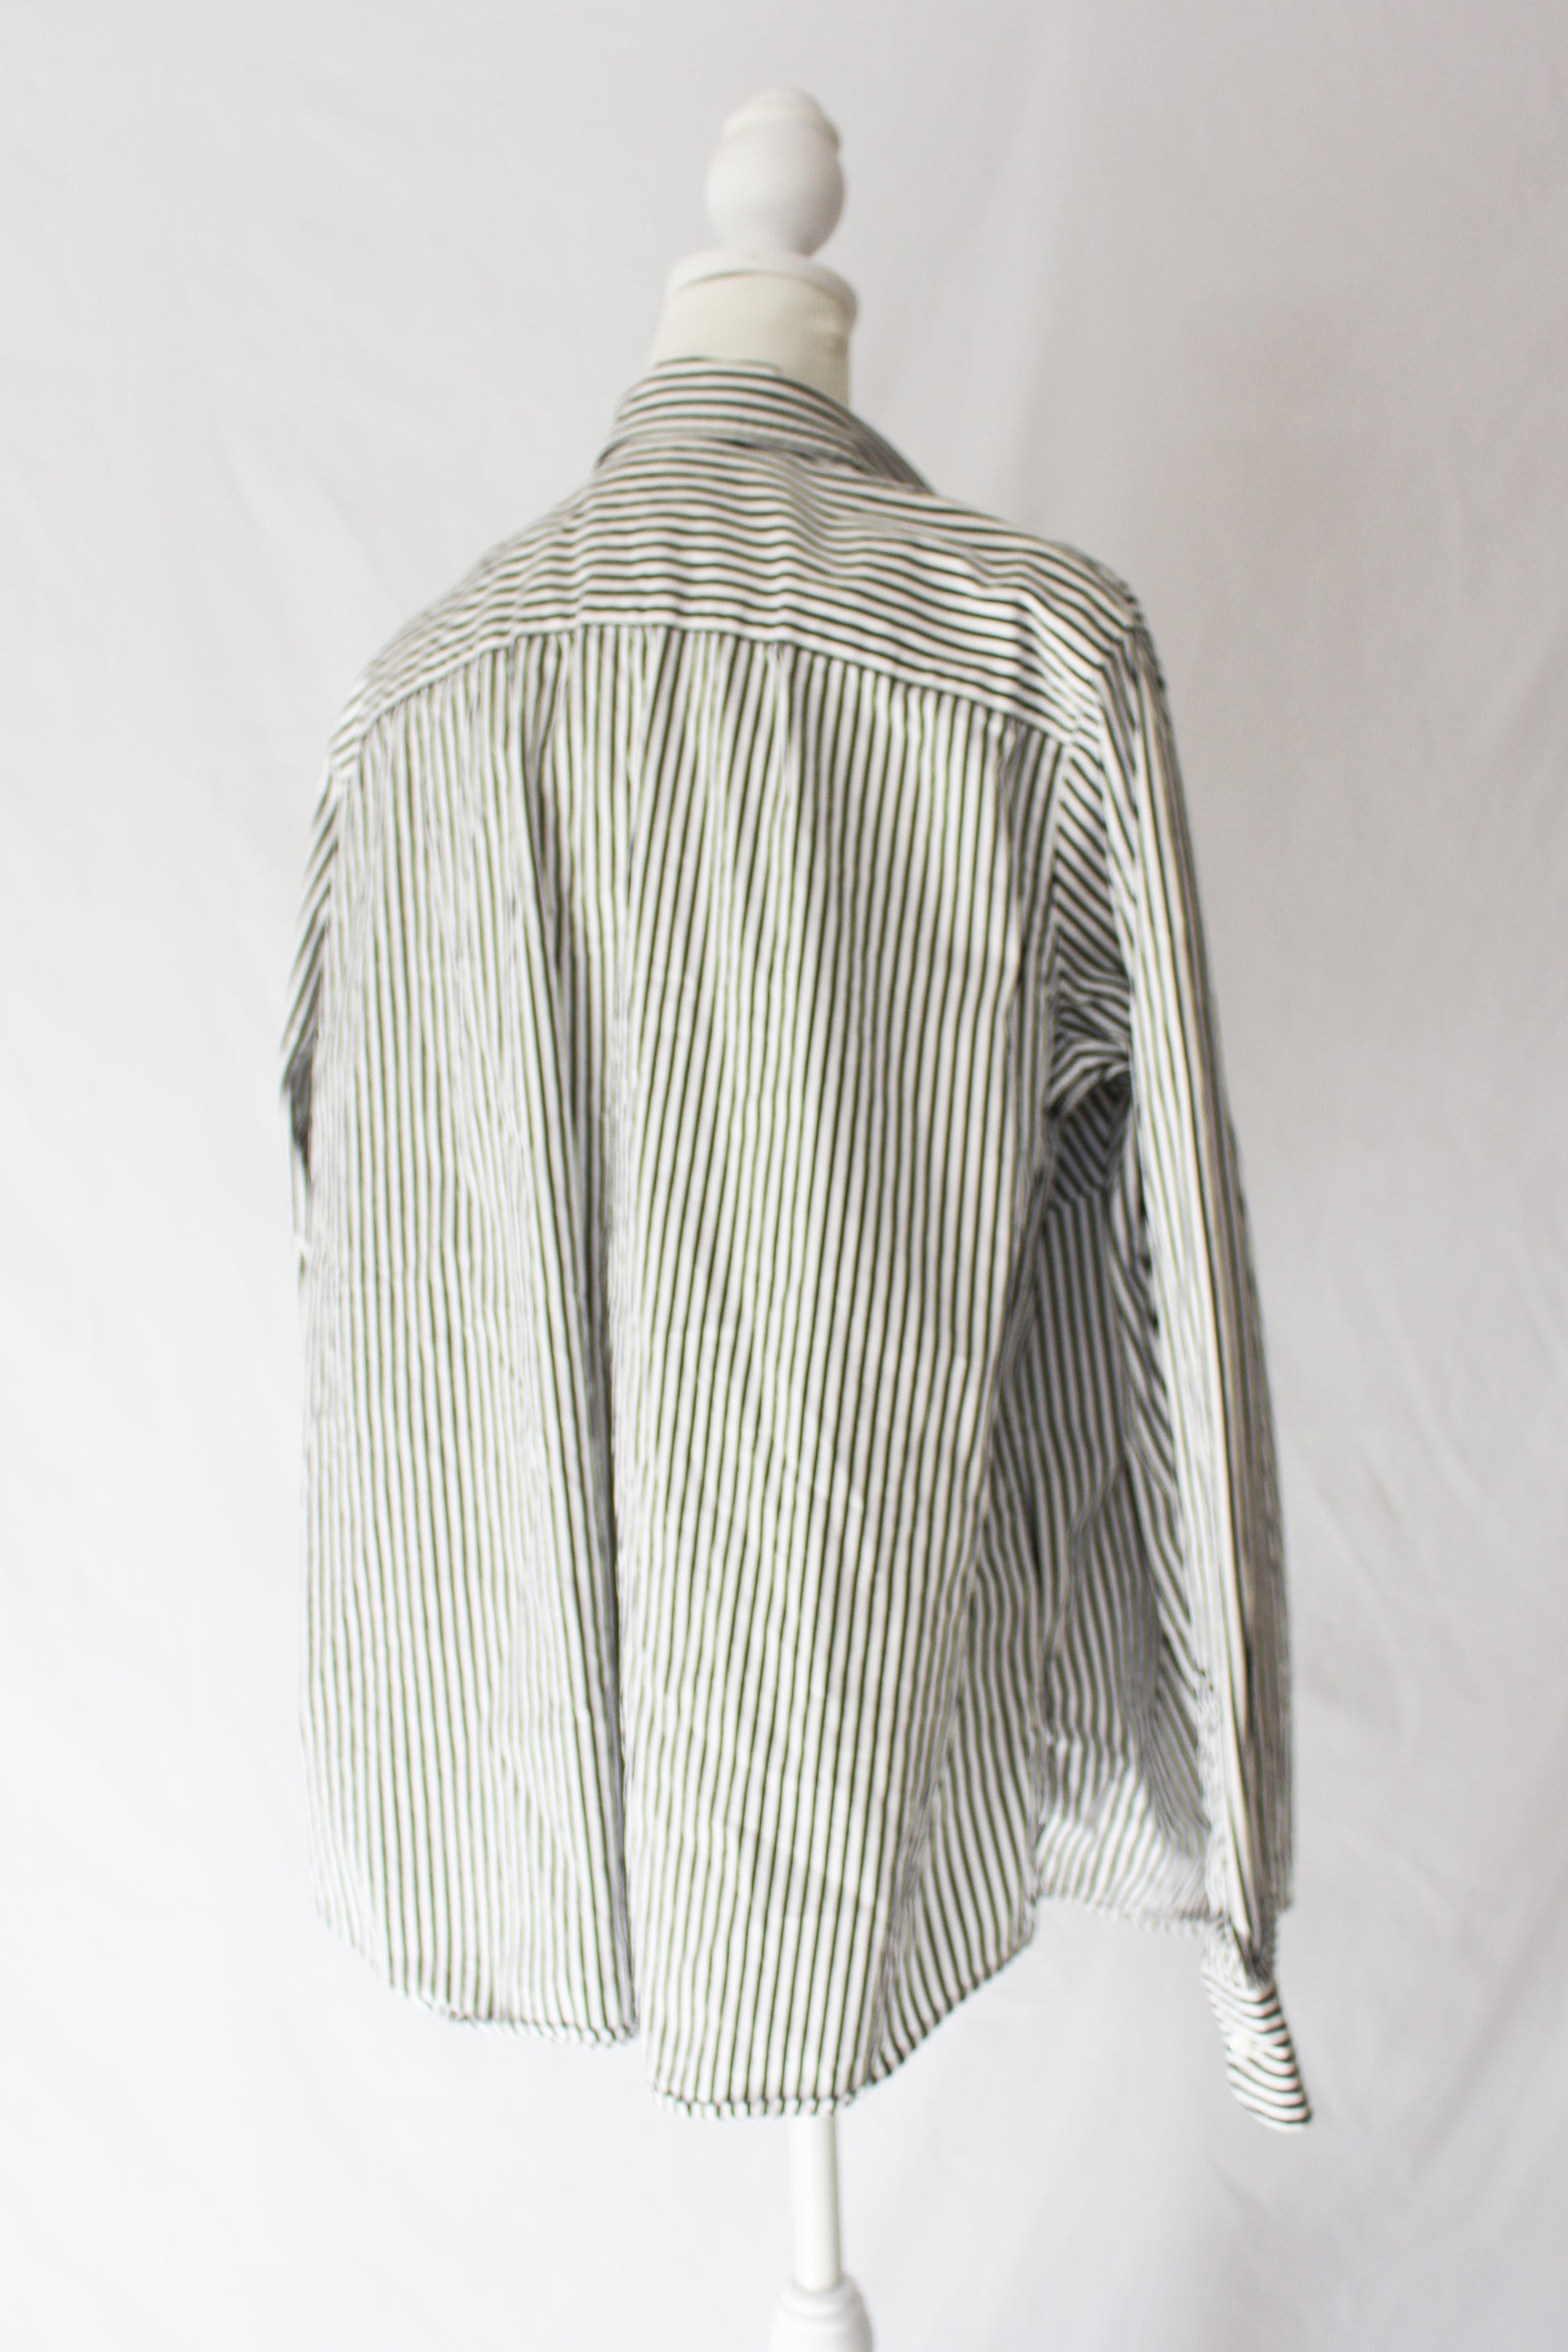 ralph lauren striped dress shirt pre-owned, thrifted, secondhand ralph lauren button up 